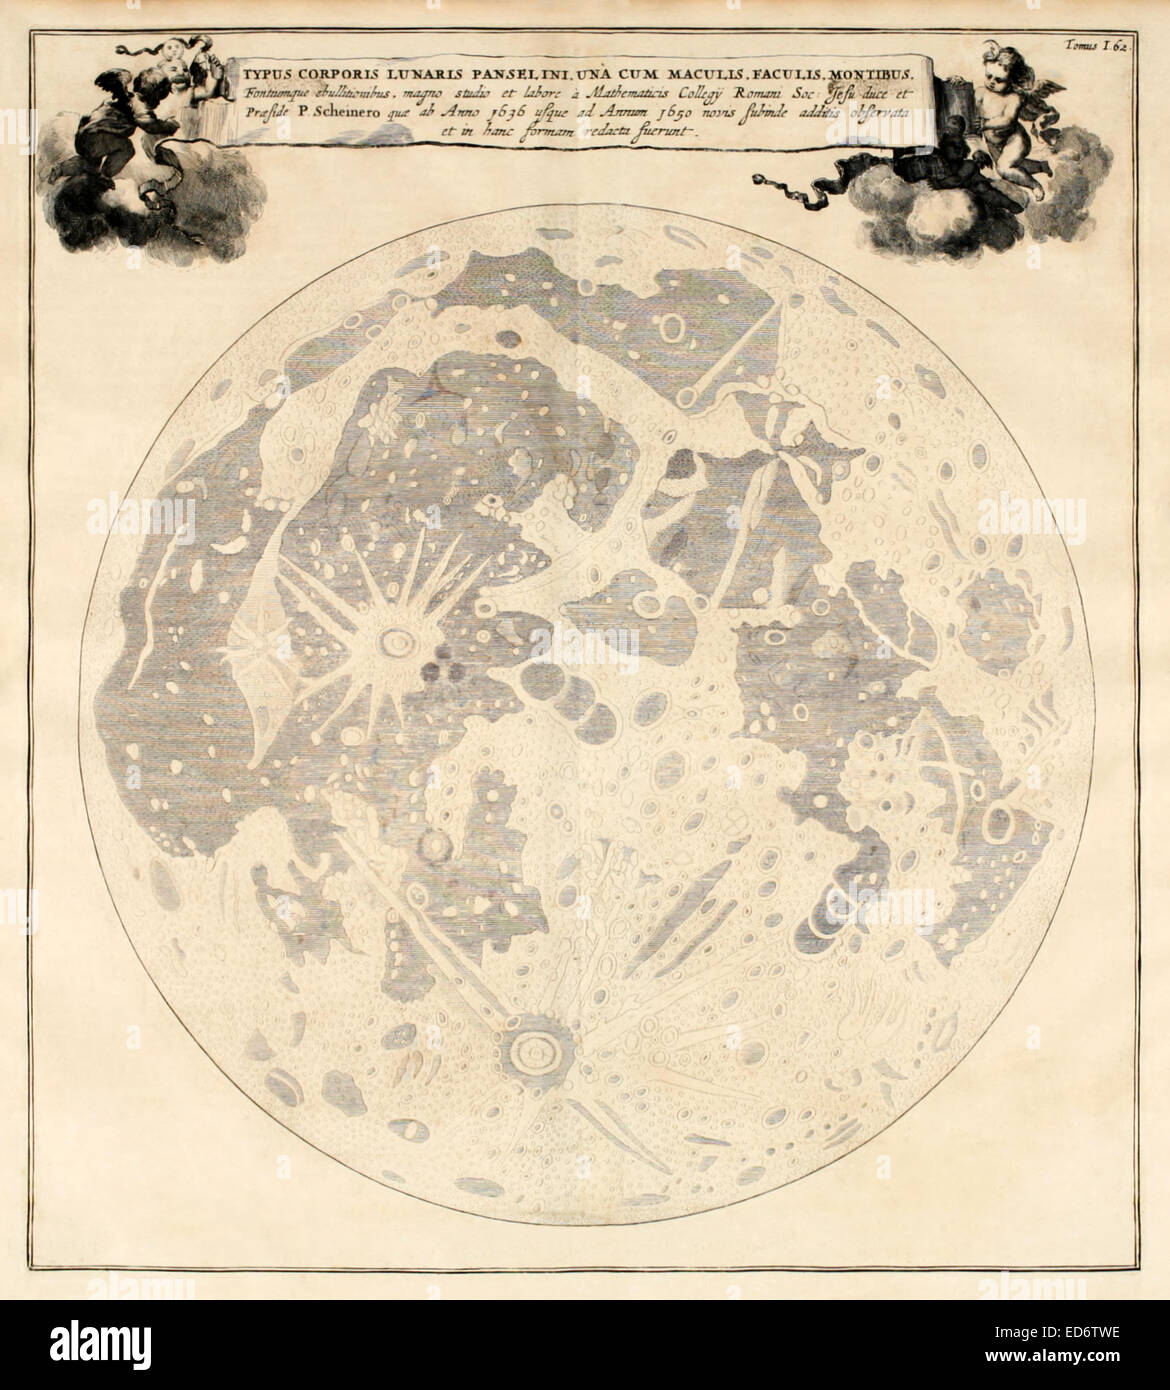 17. Jahrhundert Abbildung des Mondes und seiner Krater basierend auf Beobachtungen von Athanasius Kircher und Christoph Scheiner in 1636 und 1650 bzw.. Siehe Beschreibung für mehr Informationen. Stockfoto